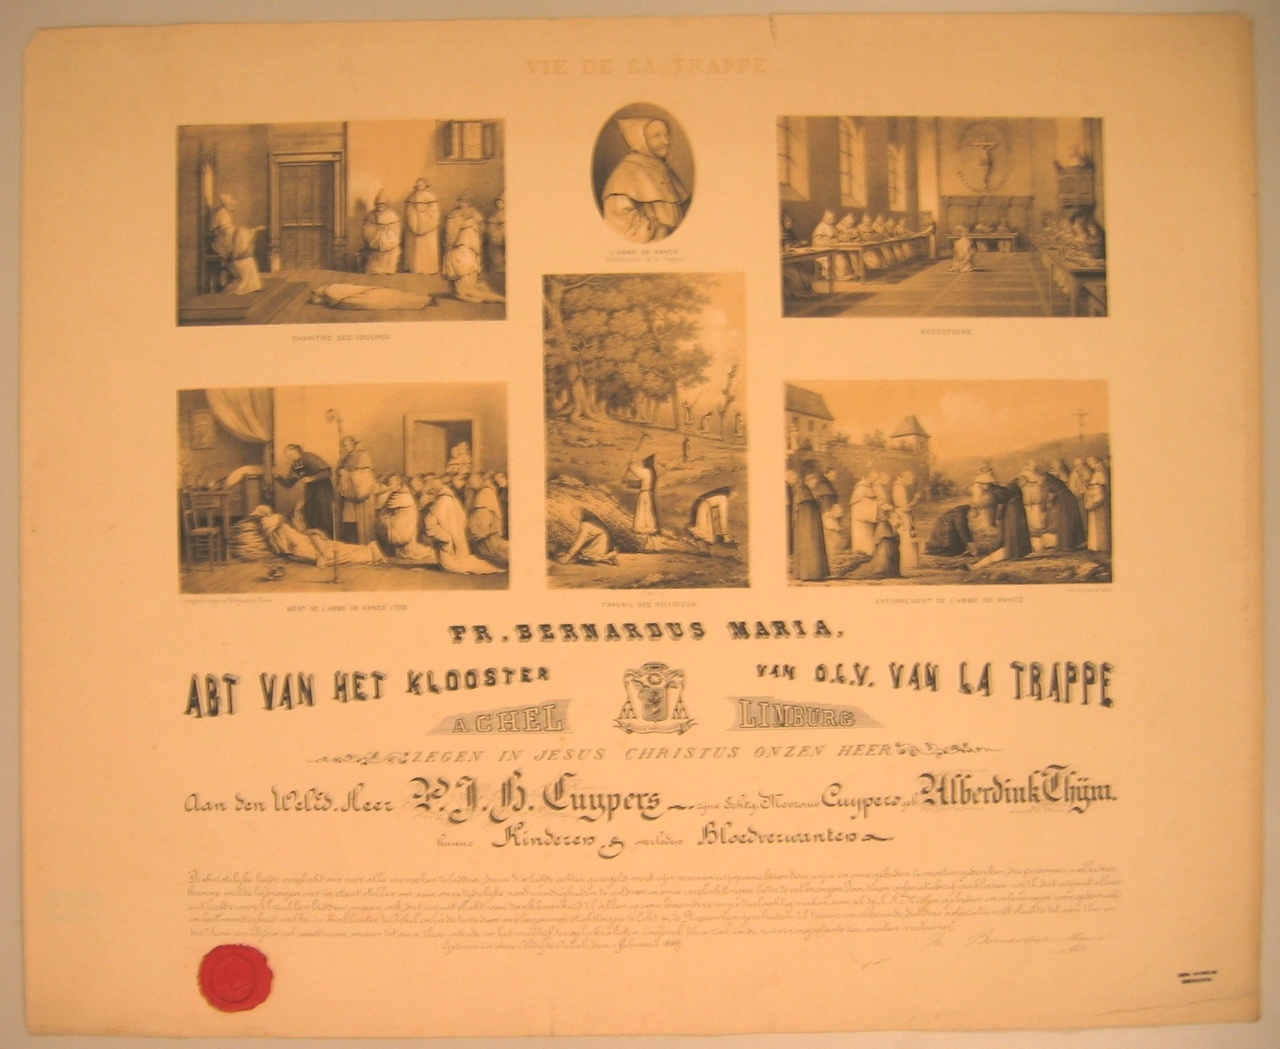 Associatiebrief van het Klooster van O.L.V. van La Trappe in Achel voor de familie Cuypers